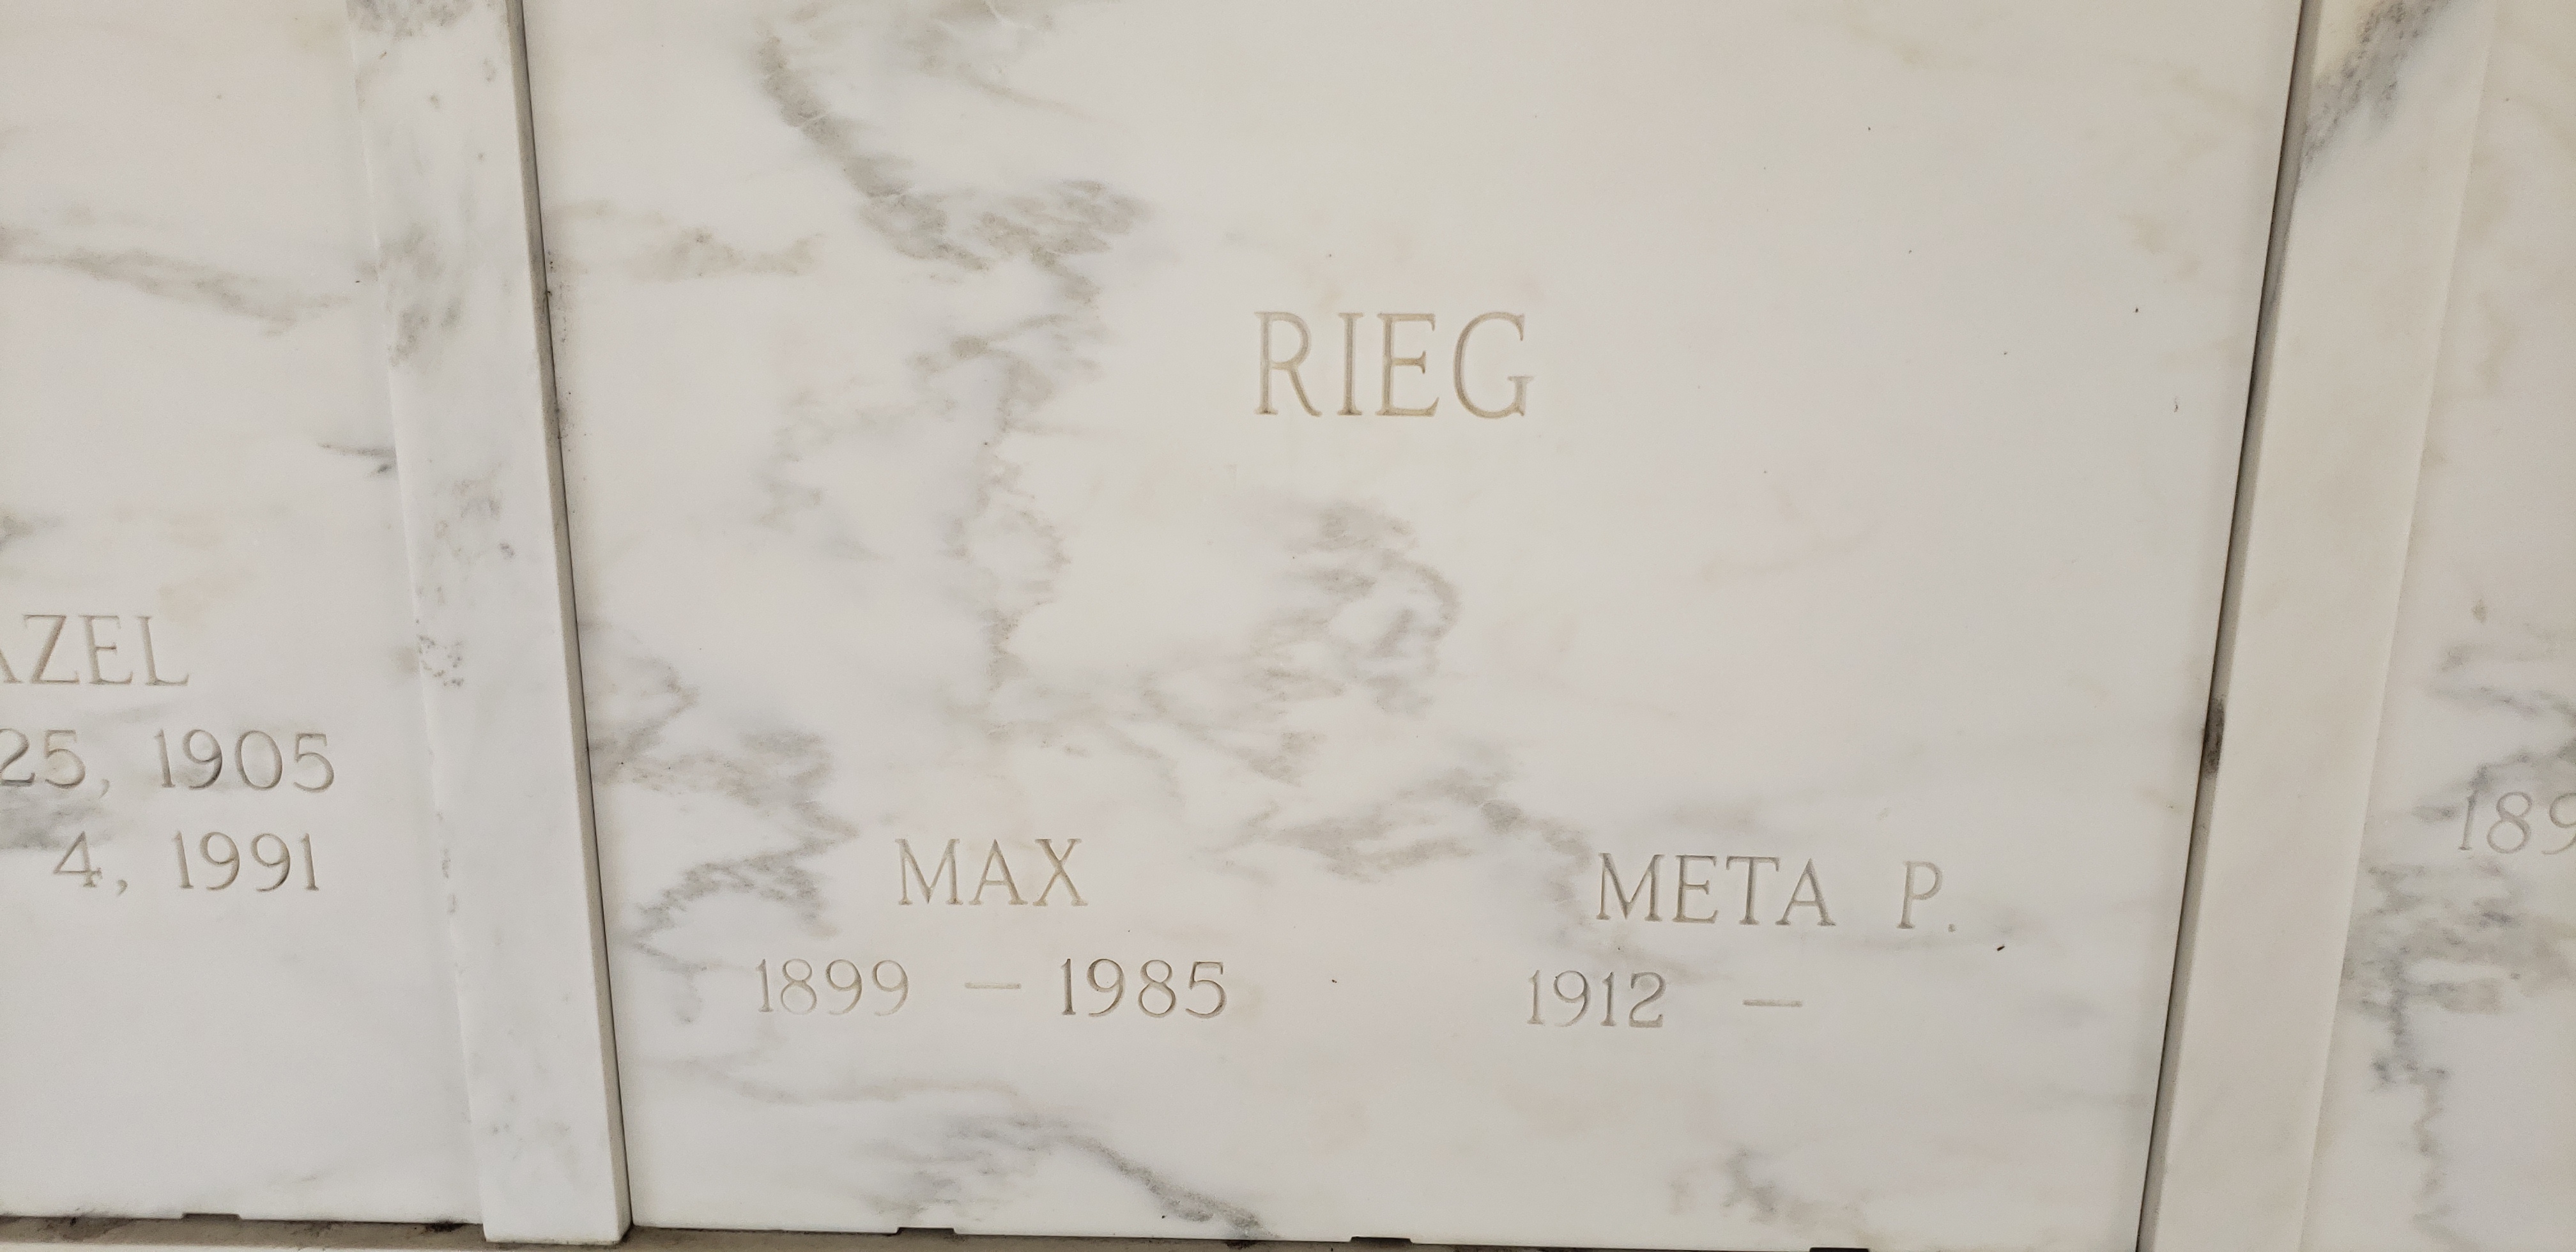 Max Rieg